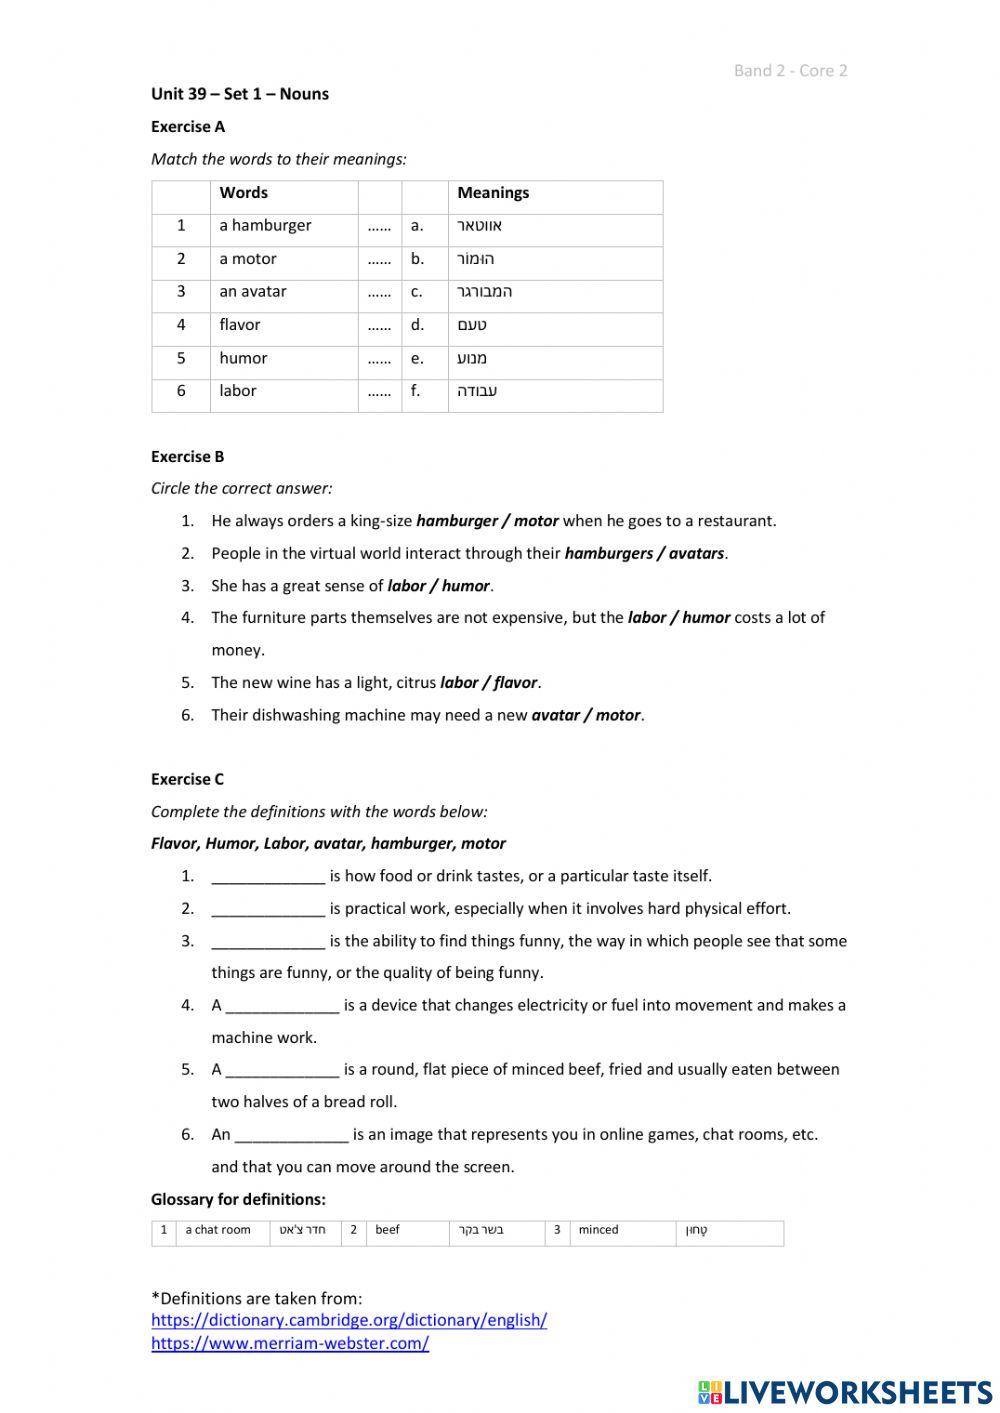 Band 2 (Core 2) - Unit 39 - Set 1 worksheet